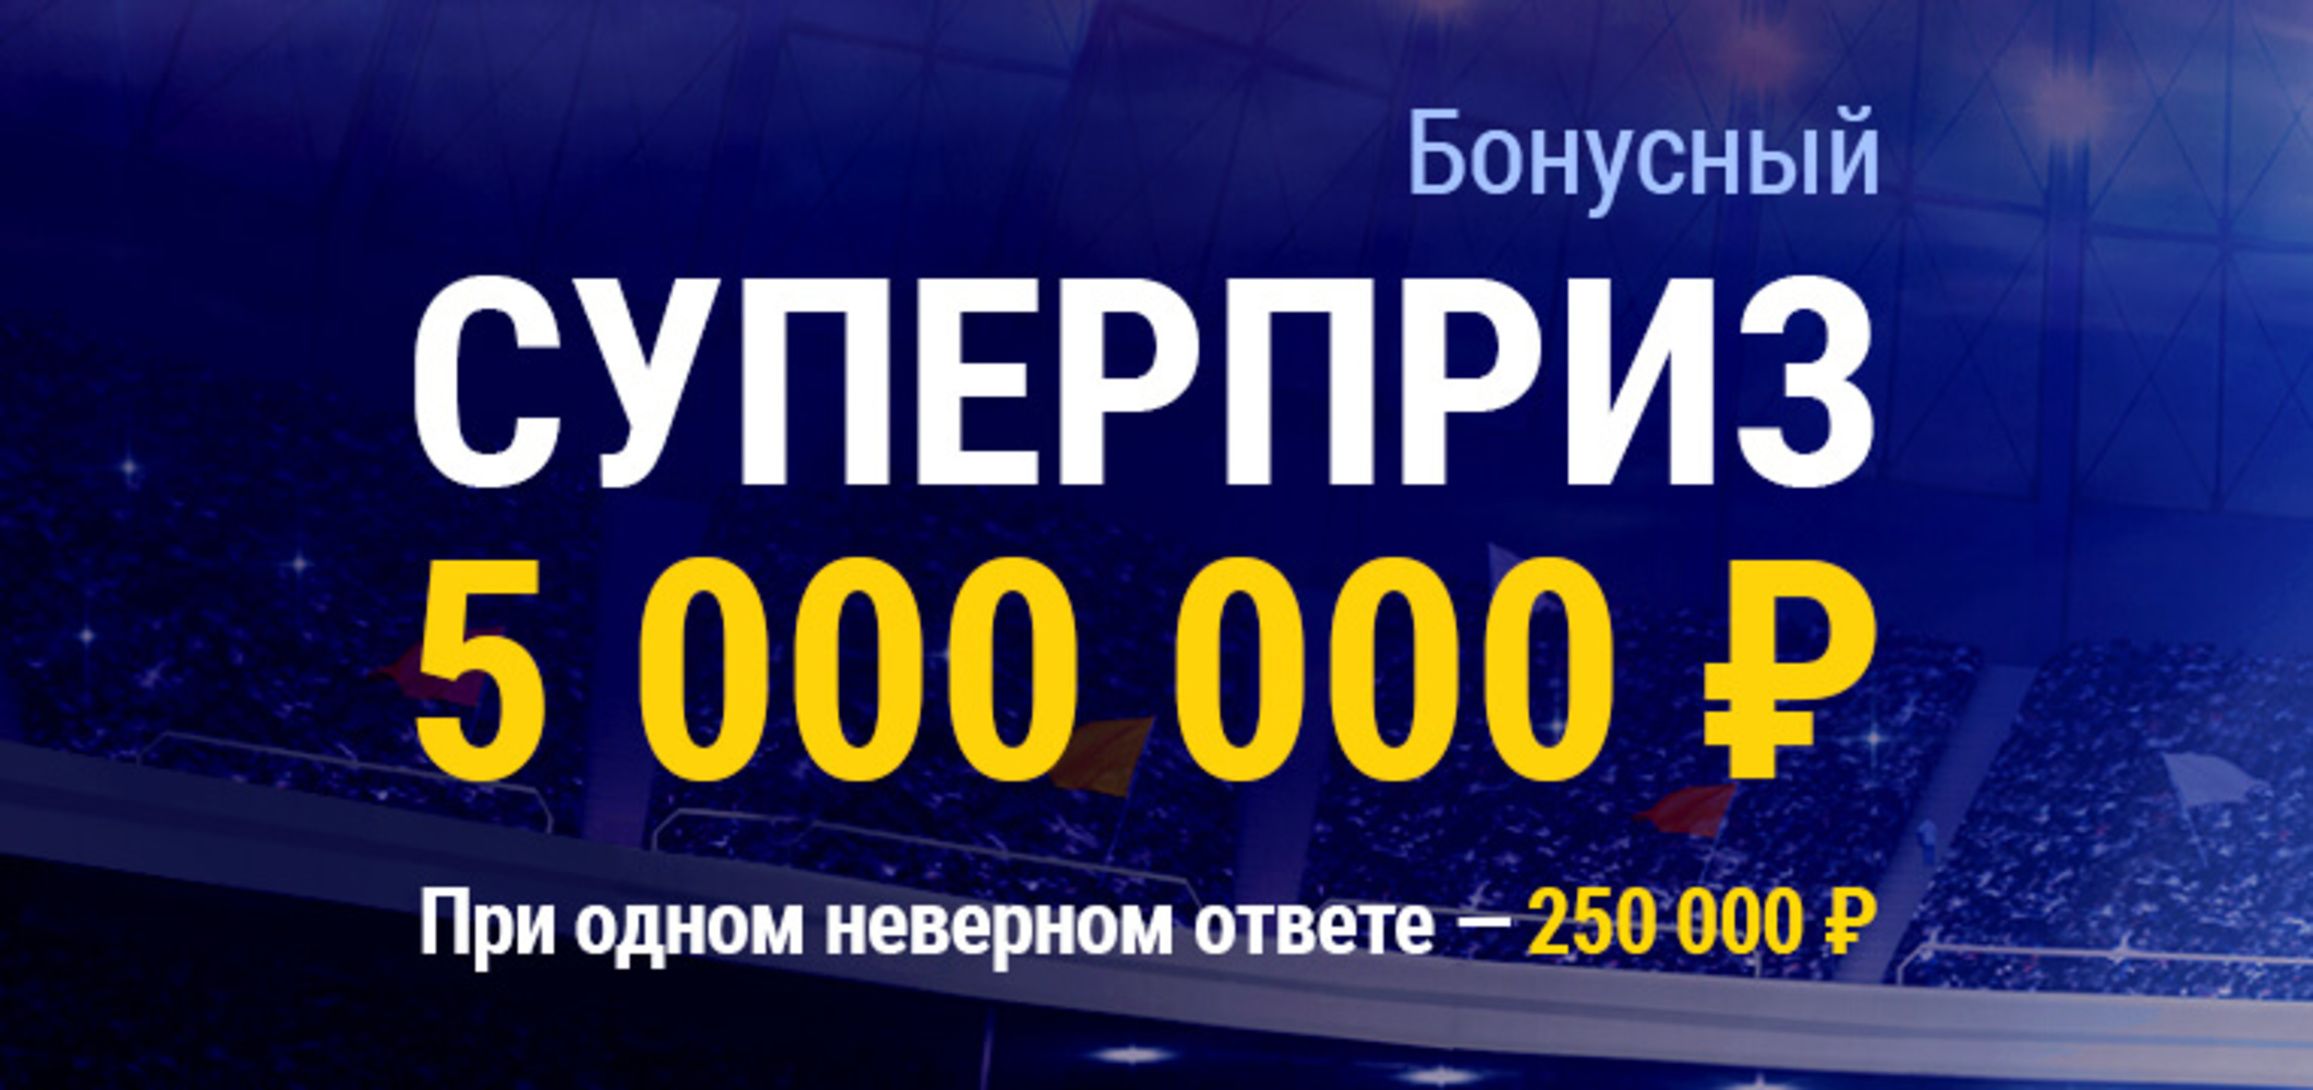 «Марафон» разыграет 5000000 рублей среди клиентов, угадавших исходы матчей